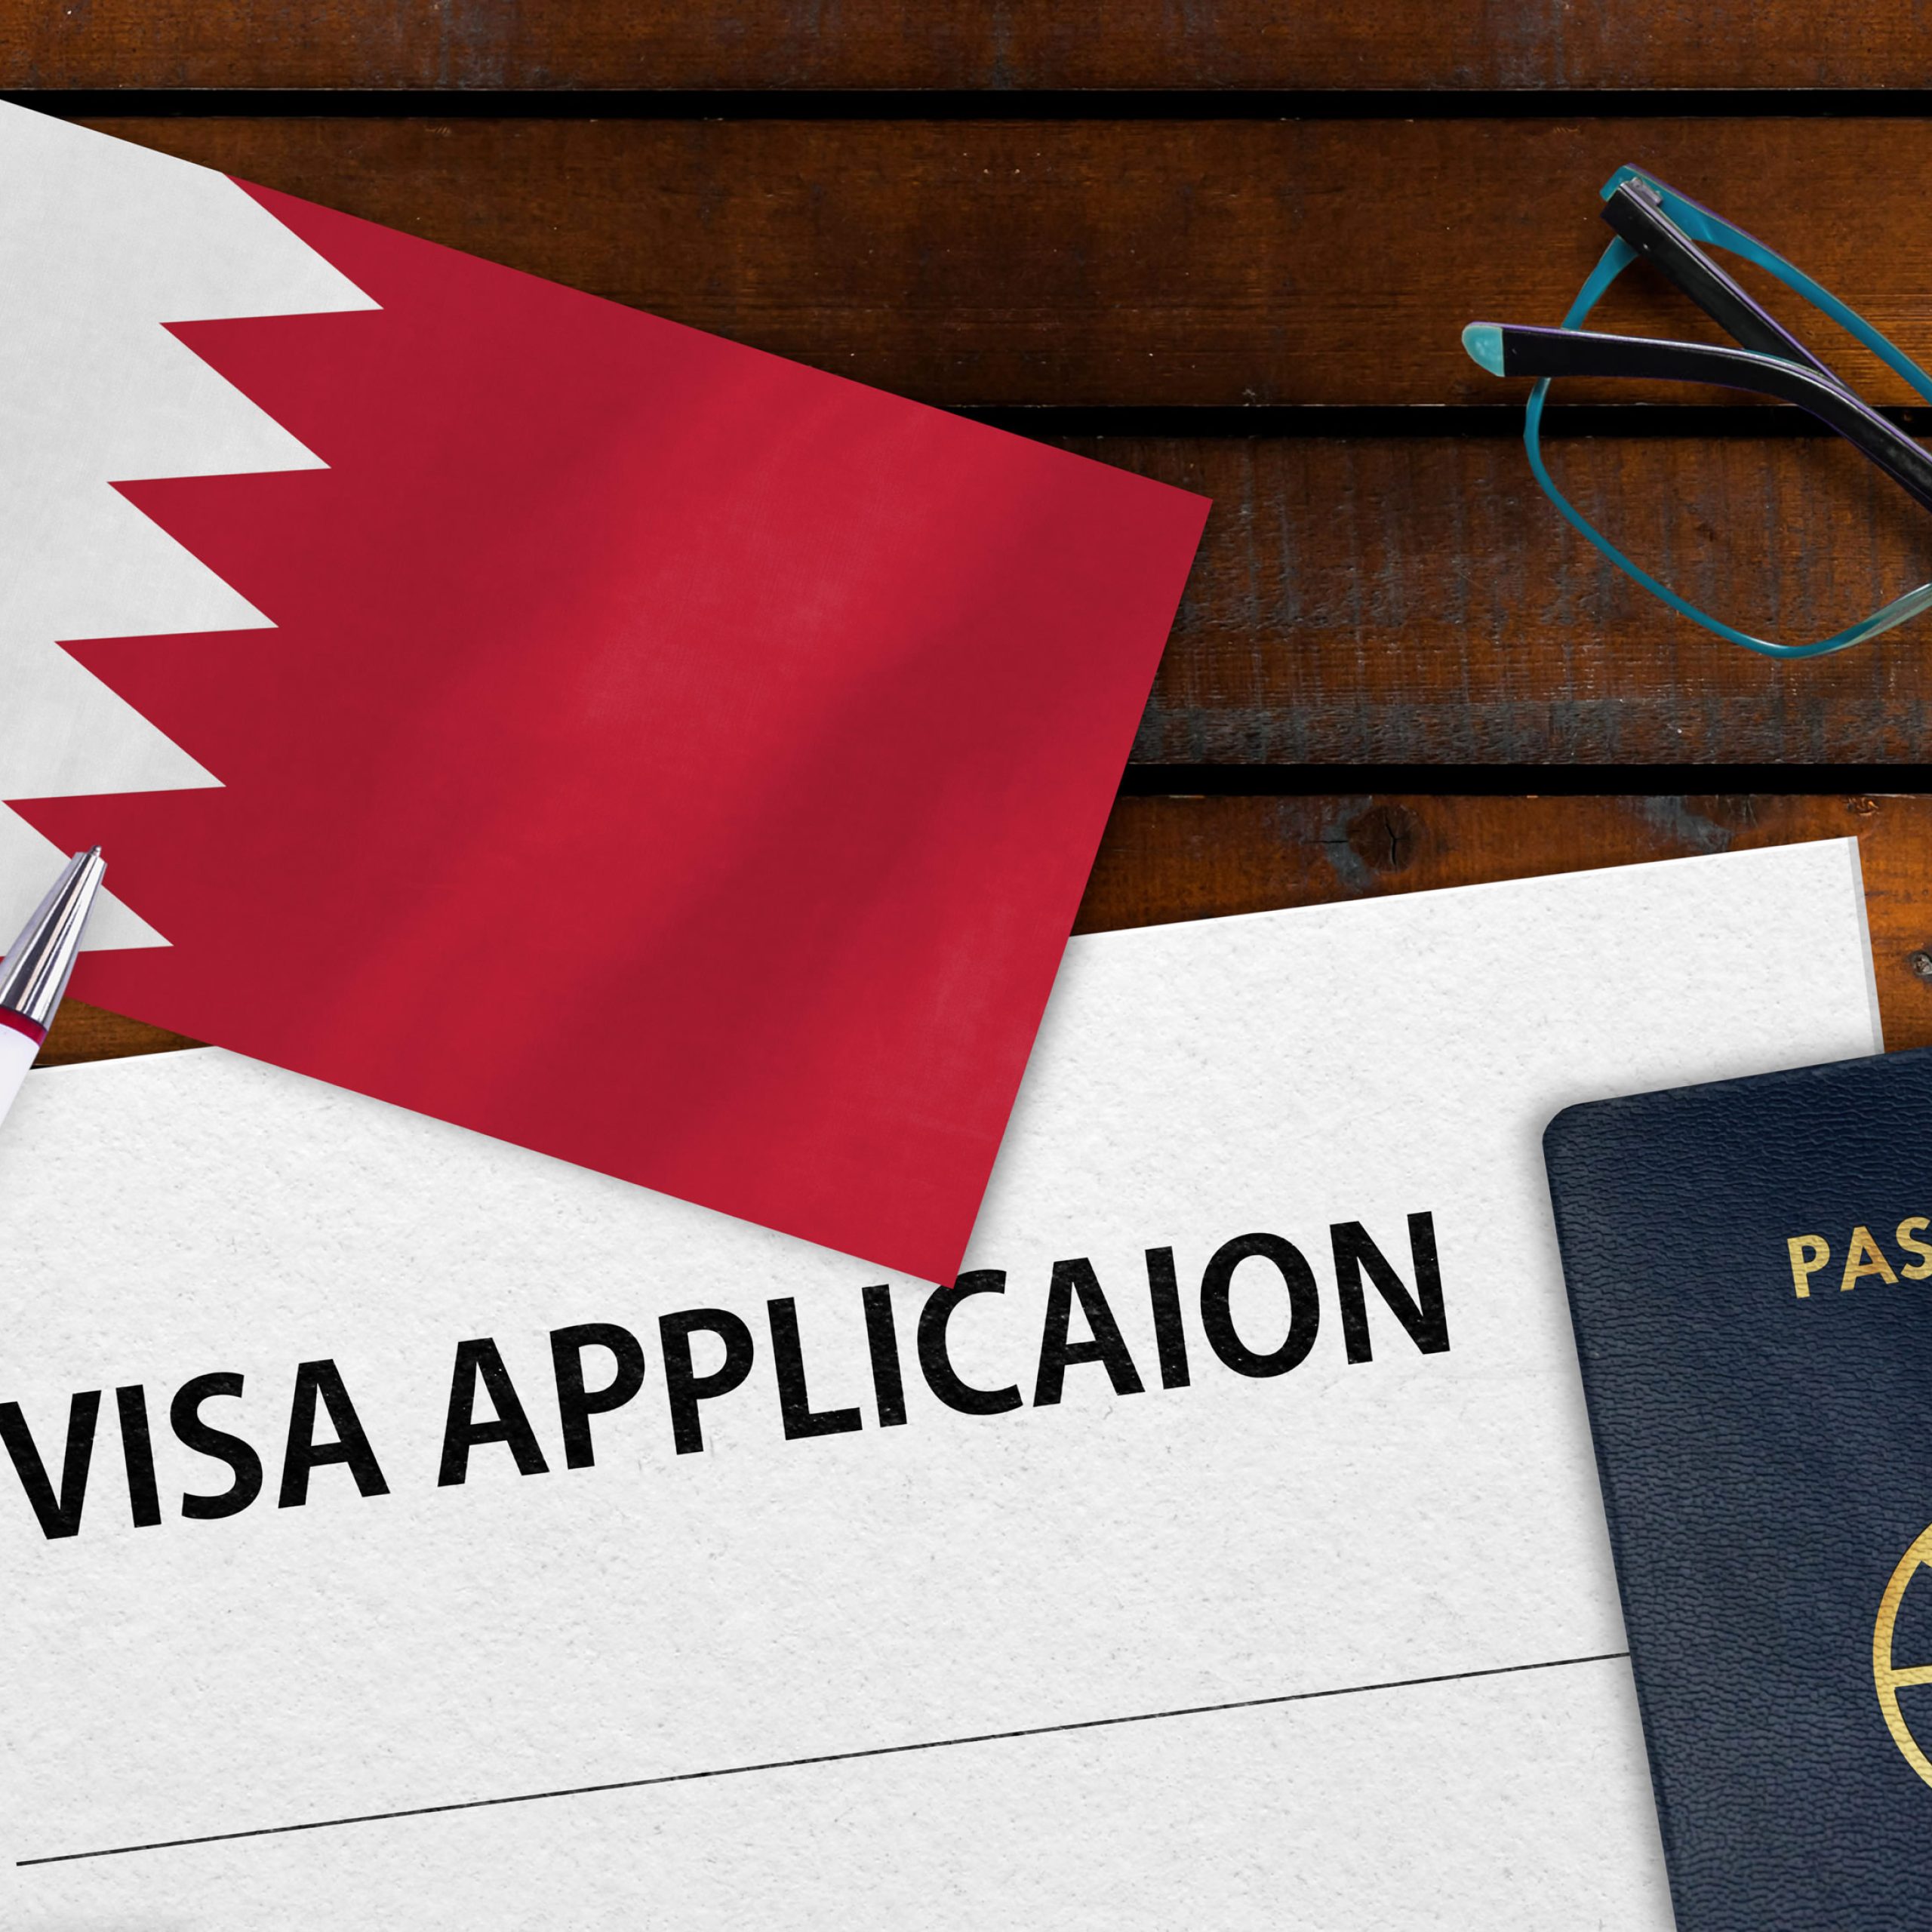 أهم المعلومات للحصول علي تأشيرة زيارة البحرين